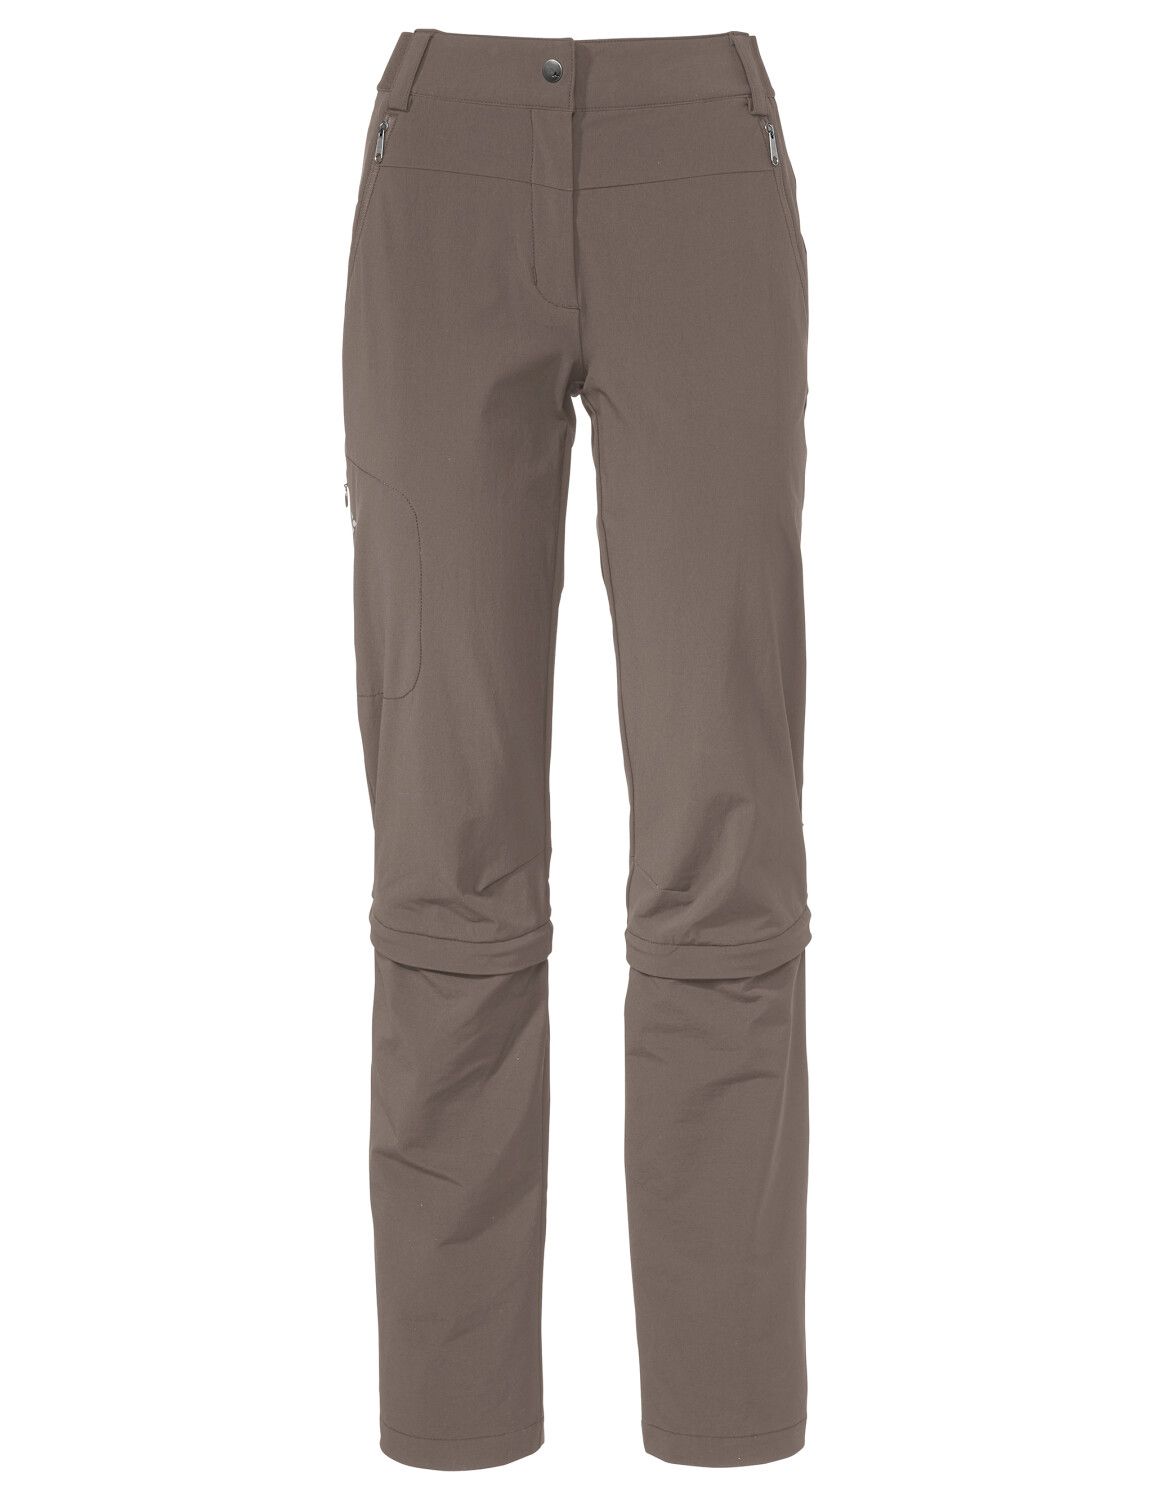 VAUDE Women's Farley Stretch Capri T-Zip Pants III (Bild 44)